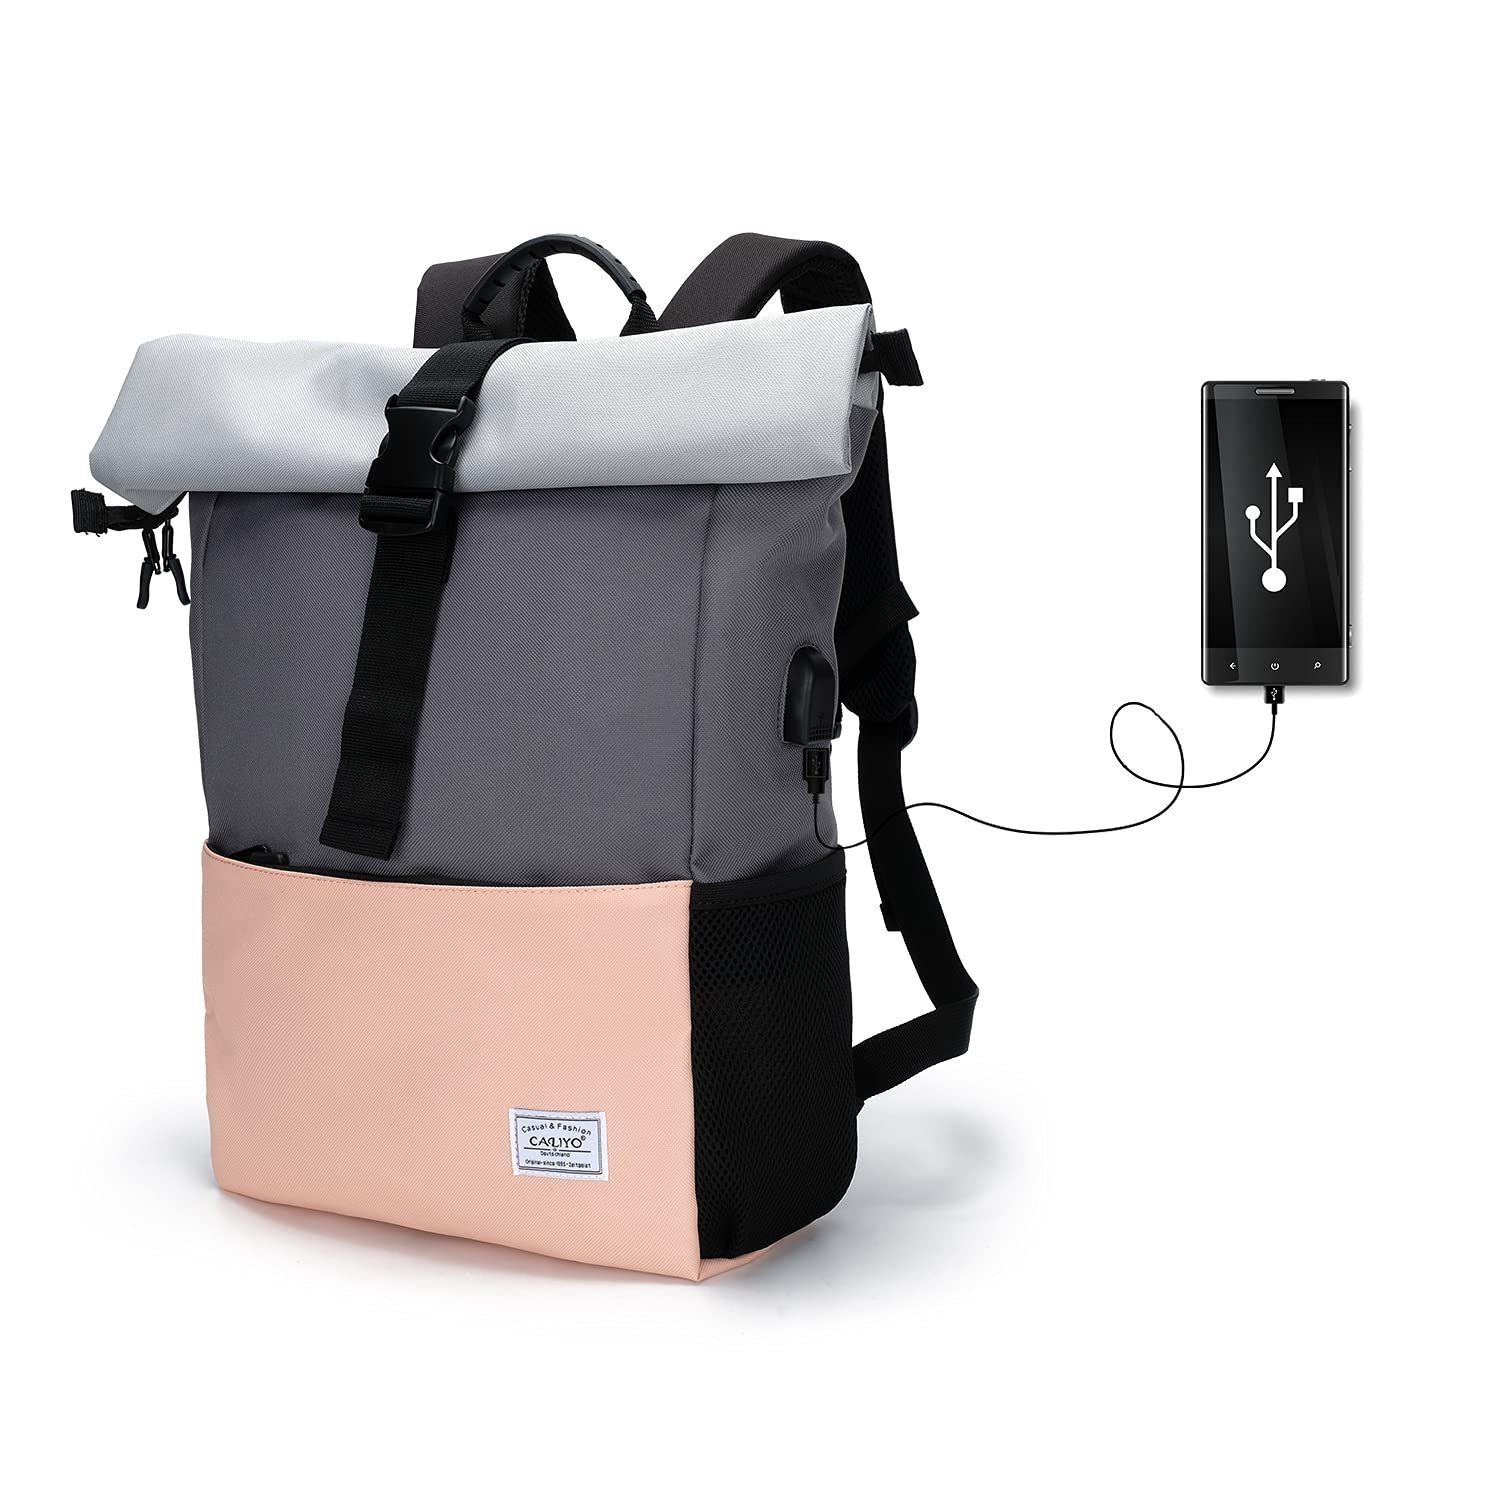 Unisex Schultasche große Kapazität für Erwachsene Frauen Jungen Student Campus Backpack Reise Outdoor Rucksack aus Canvas lässig Rucksäcke für Bücher Laptop Lebensmittel Kleidung Daypack Braun 